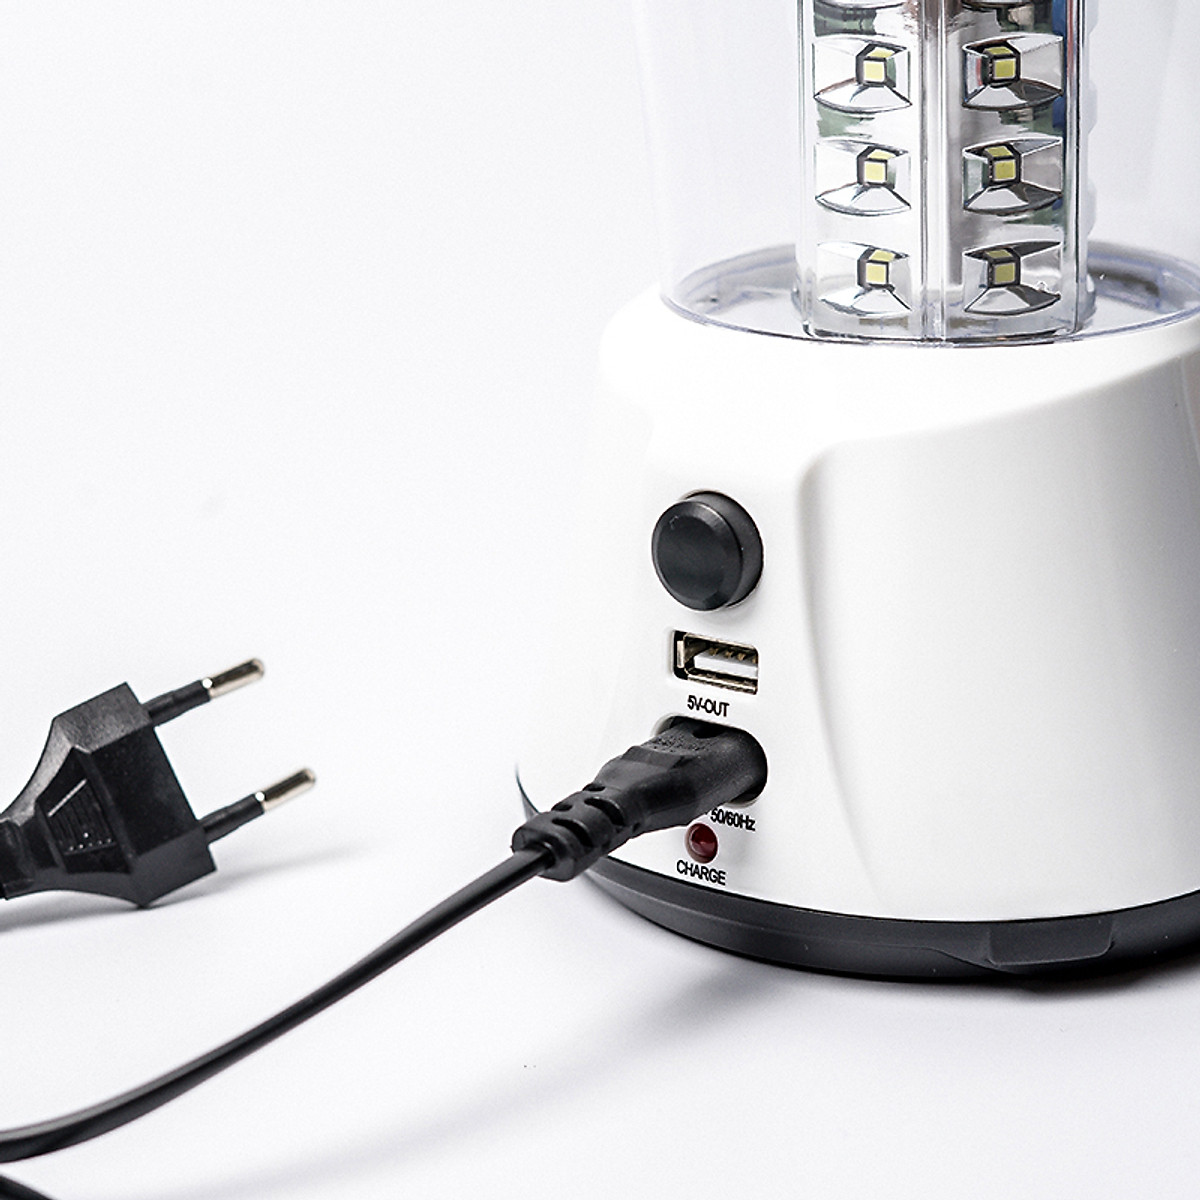 Đèn sạc - Đèn tích điện thông minh KN1960L công nghệ LED tiết kiệm năng lượng, dùng khi mất điện, khi đi cắm trại.